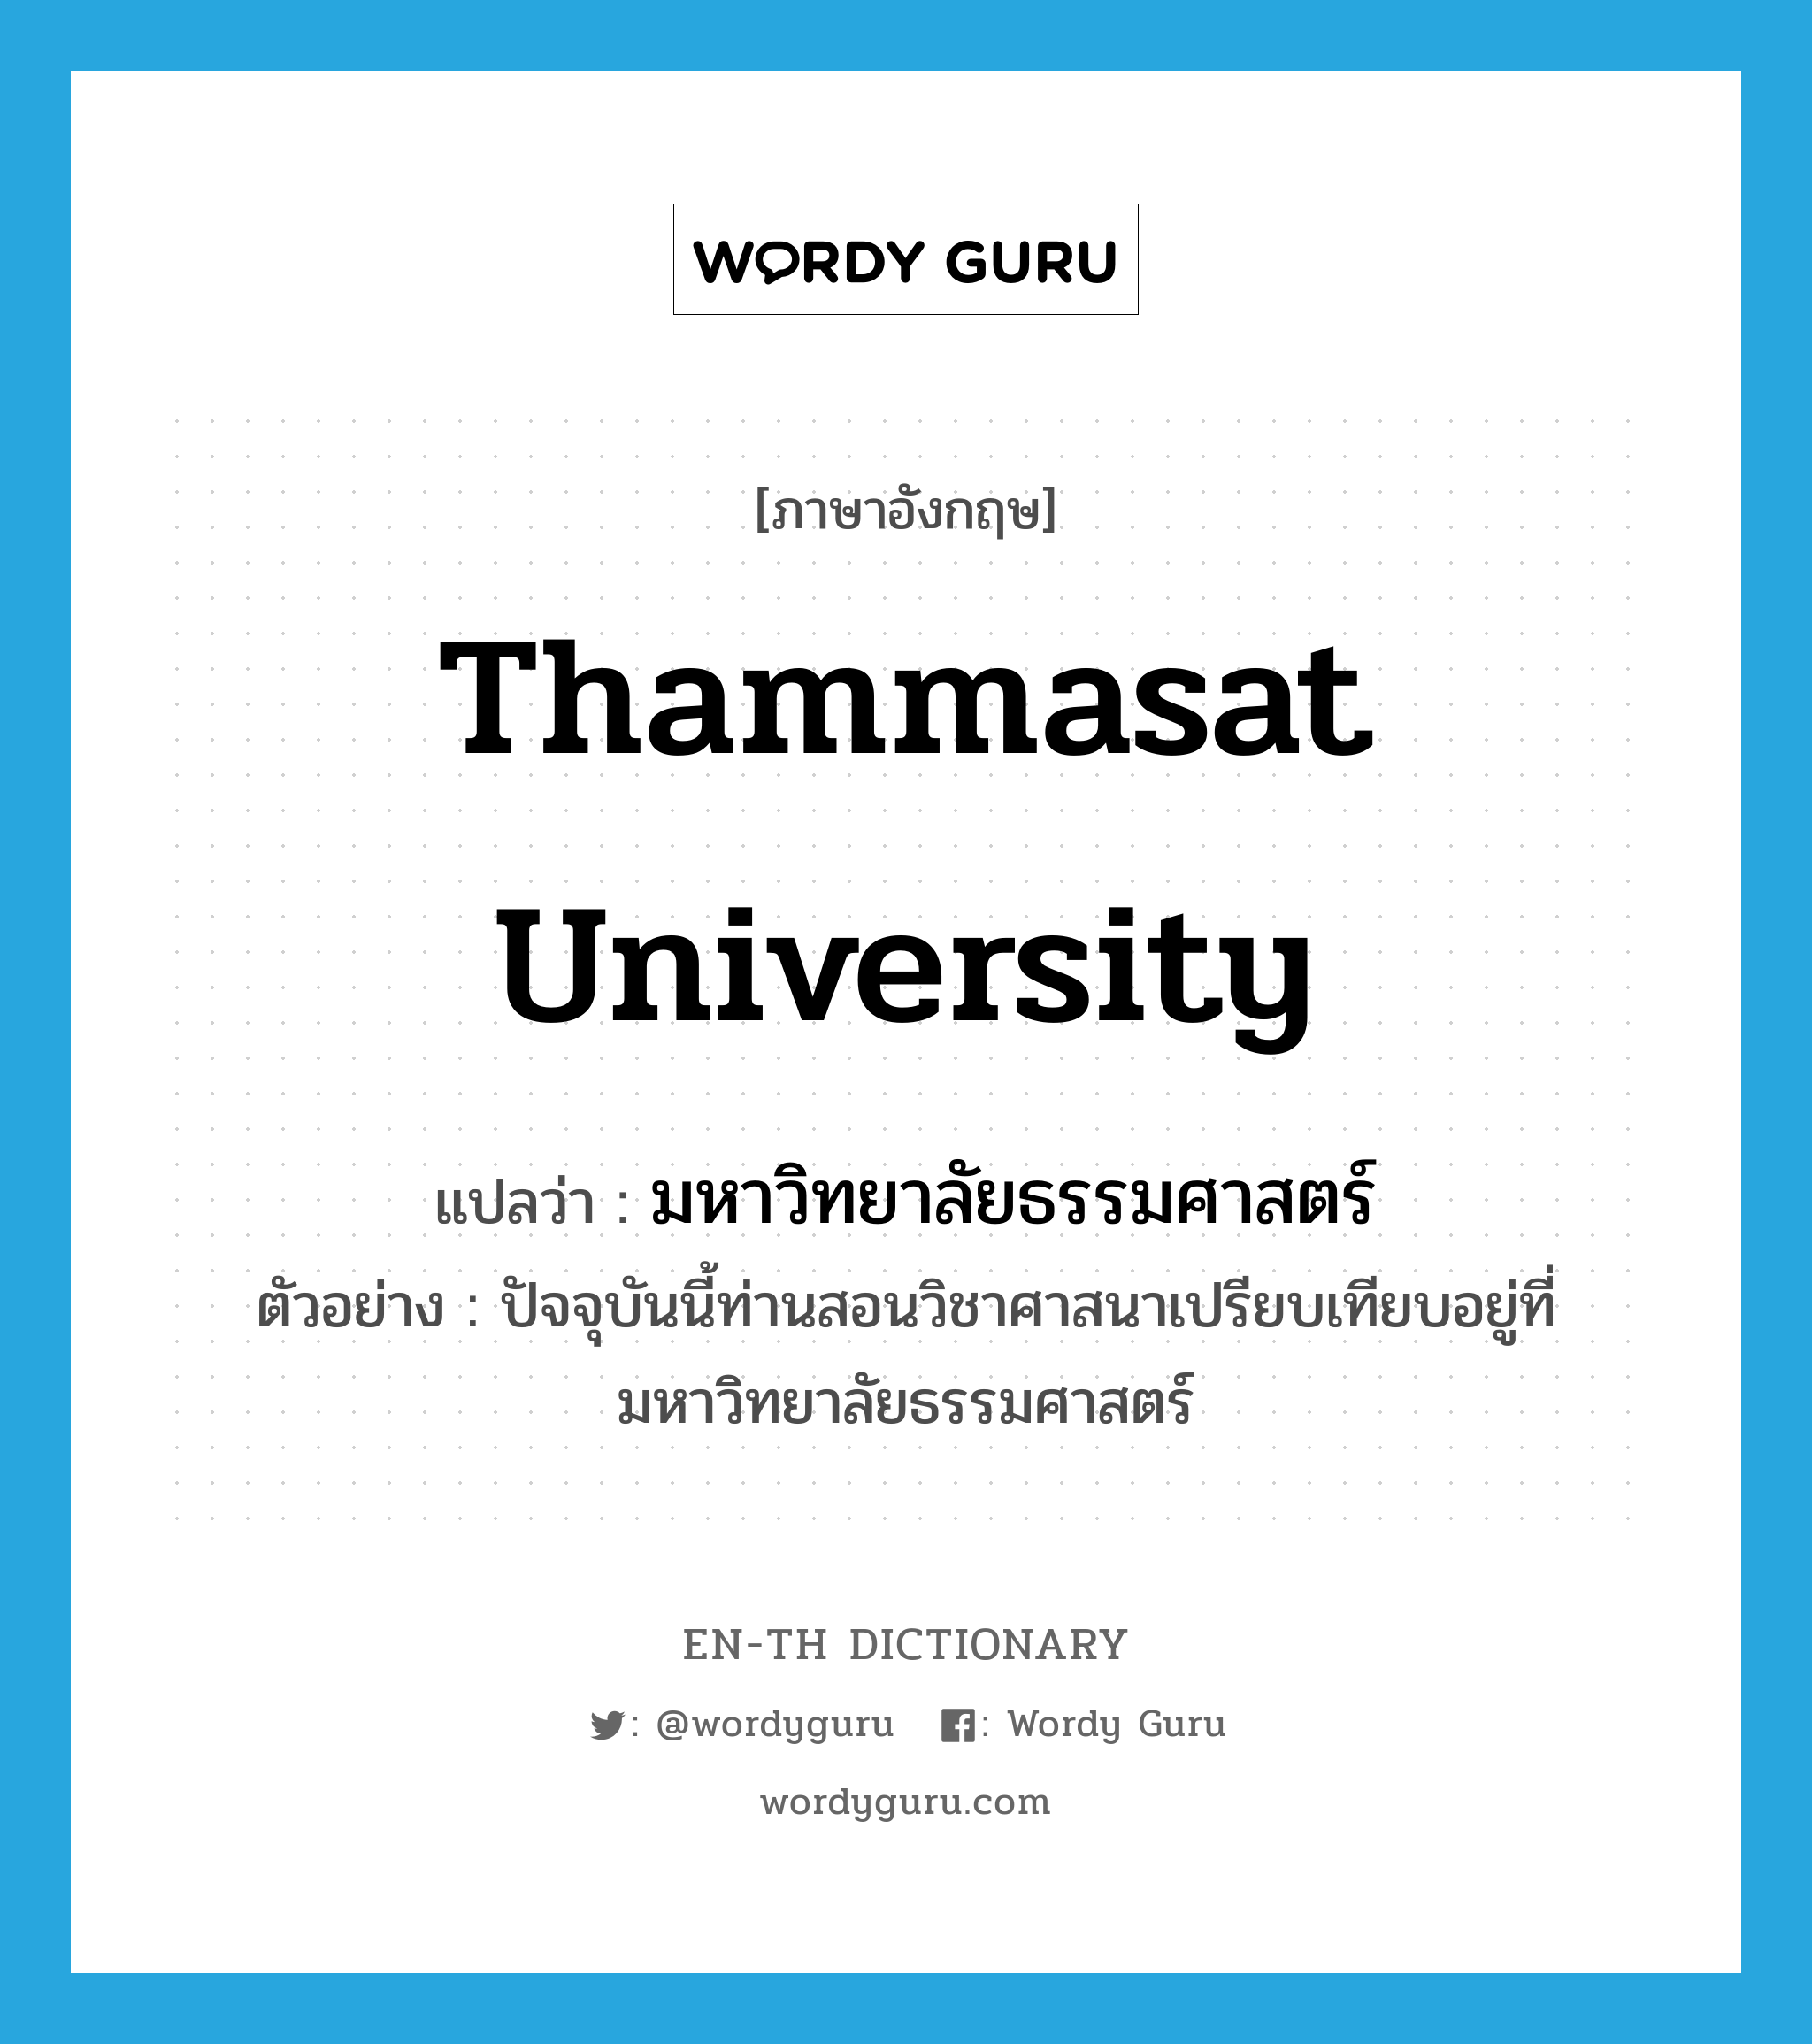 มหาวิทยาลัยธรรมศาสตร์ ภาษาอังกฤษ?, คำศัพท์ภาษาอังกฤษ มหาวิทยาลัยธรรมศาสตร์ แปลว่า Thammasat University ประเภท N ตัวอย่าง ปัจจุบันนี้ท่านสอนวิชาศาสนาเปรียบเทียบอยู่ที่มหาวิทยาลัยธรรมศาสตร์ หมวด N